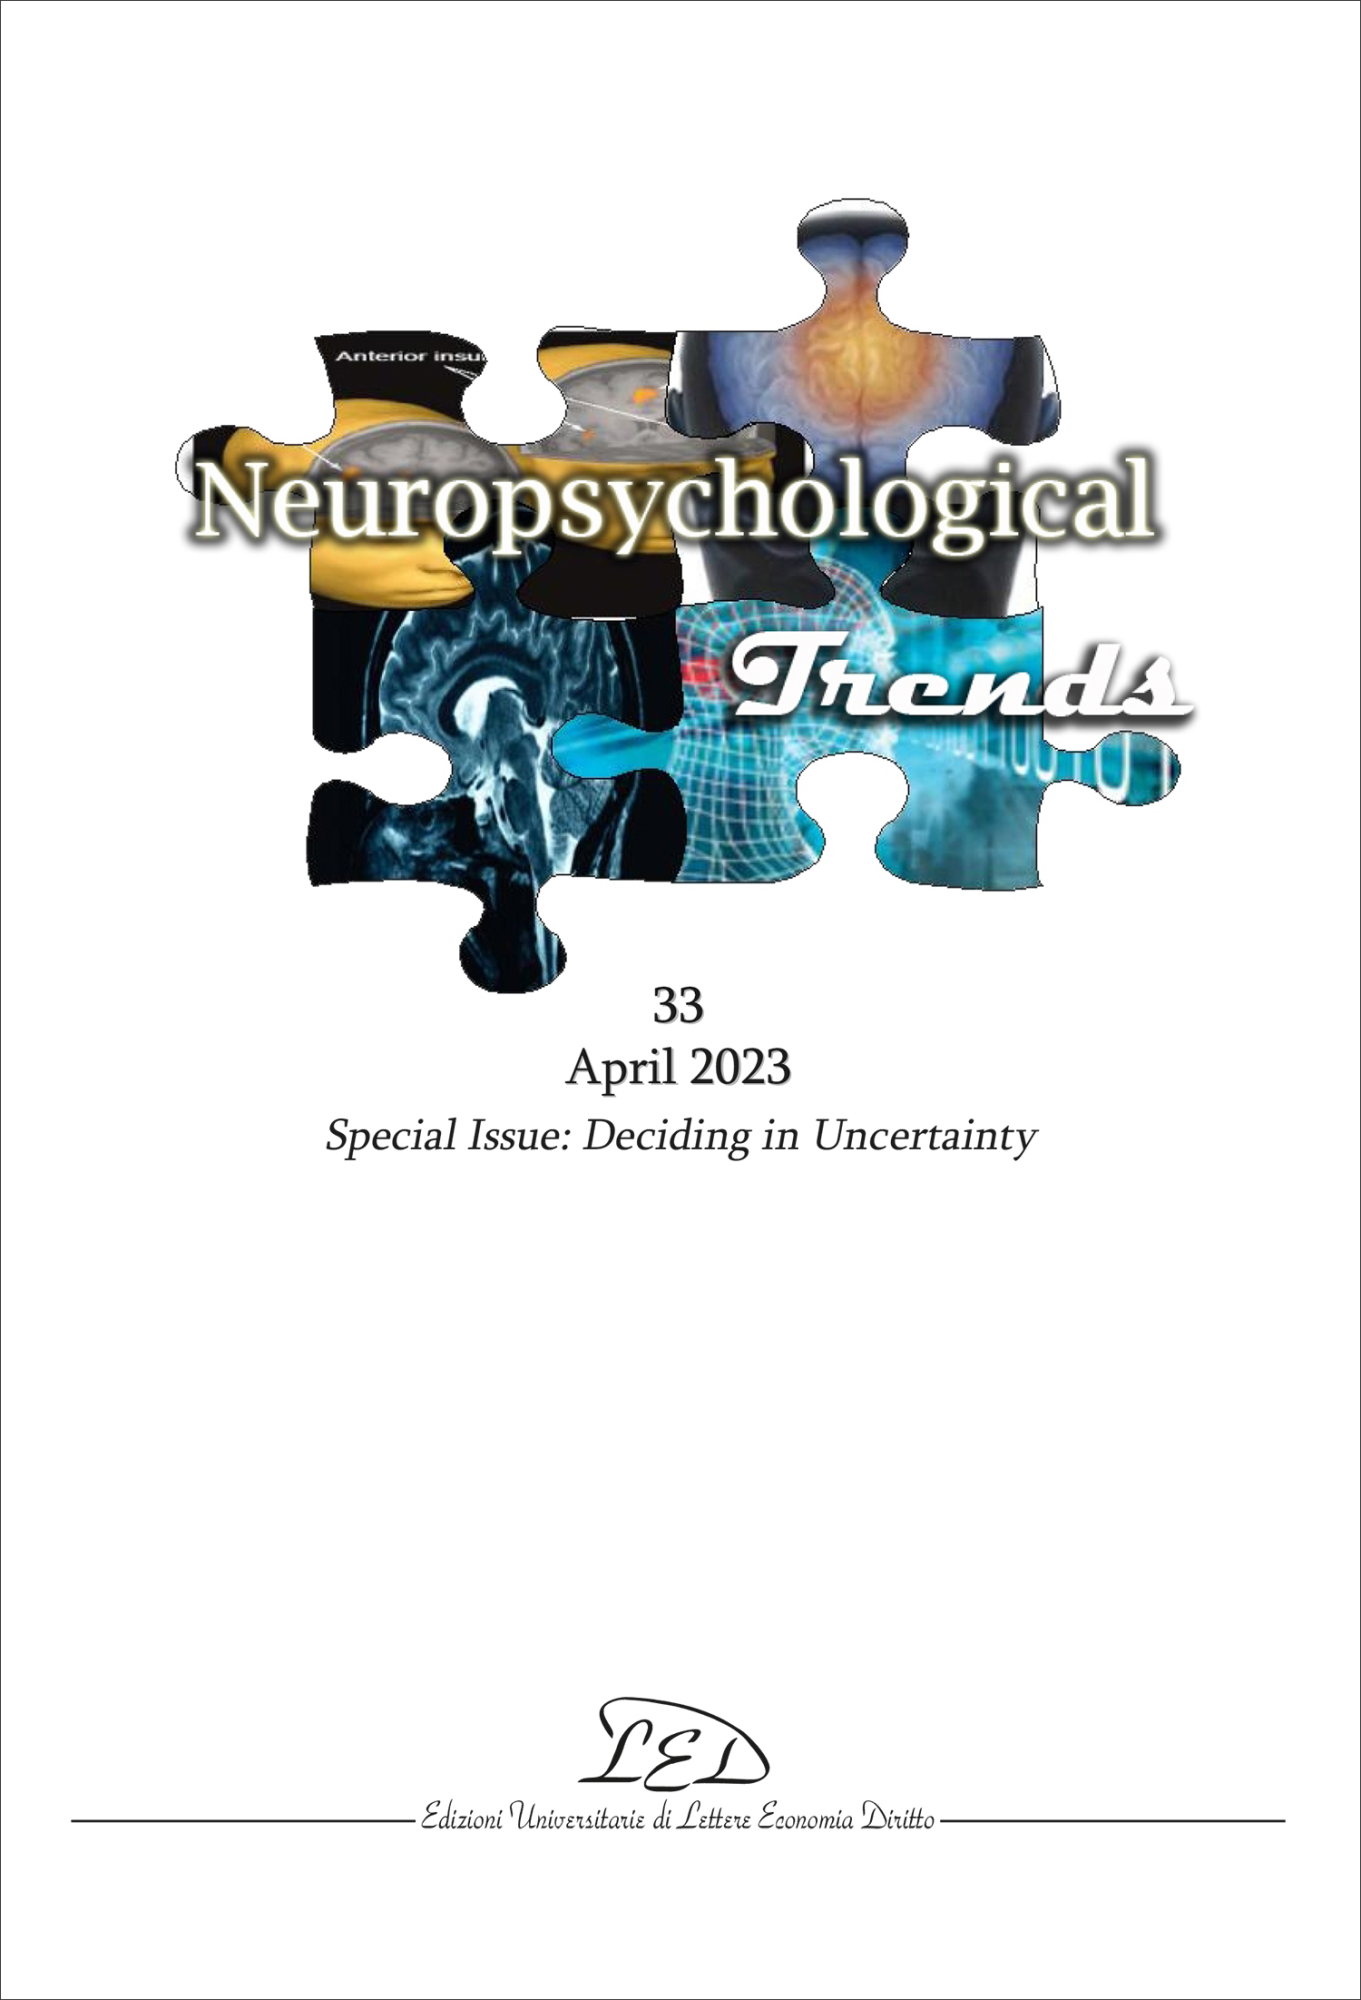 Libri Aa.Vv. - Neuropsychogical Trends 33 - April 2023. Special Issue: Deciding In Uncertainty NUOVO SIGILLATO, EDIZIONE DEL 12/05/2023 SUBITO DISPONIBILE